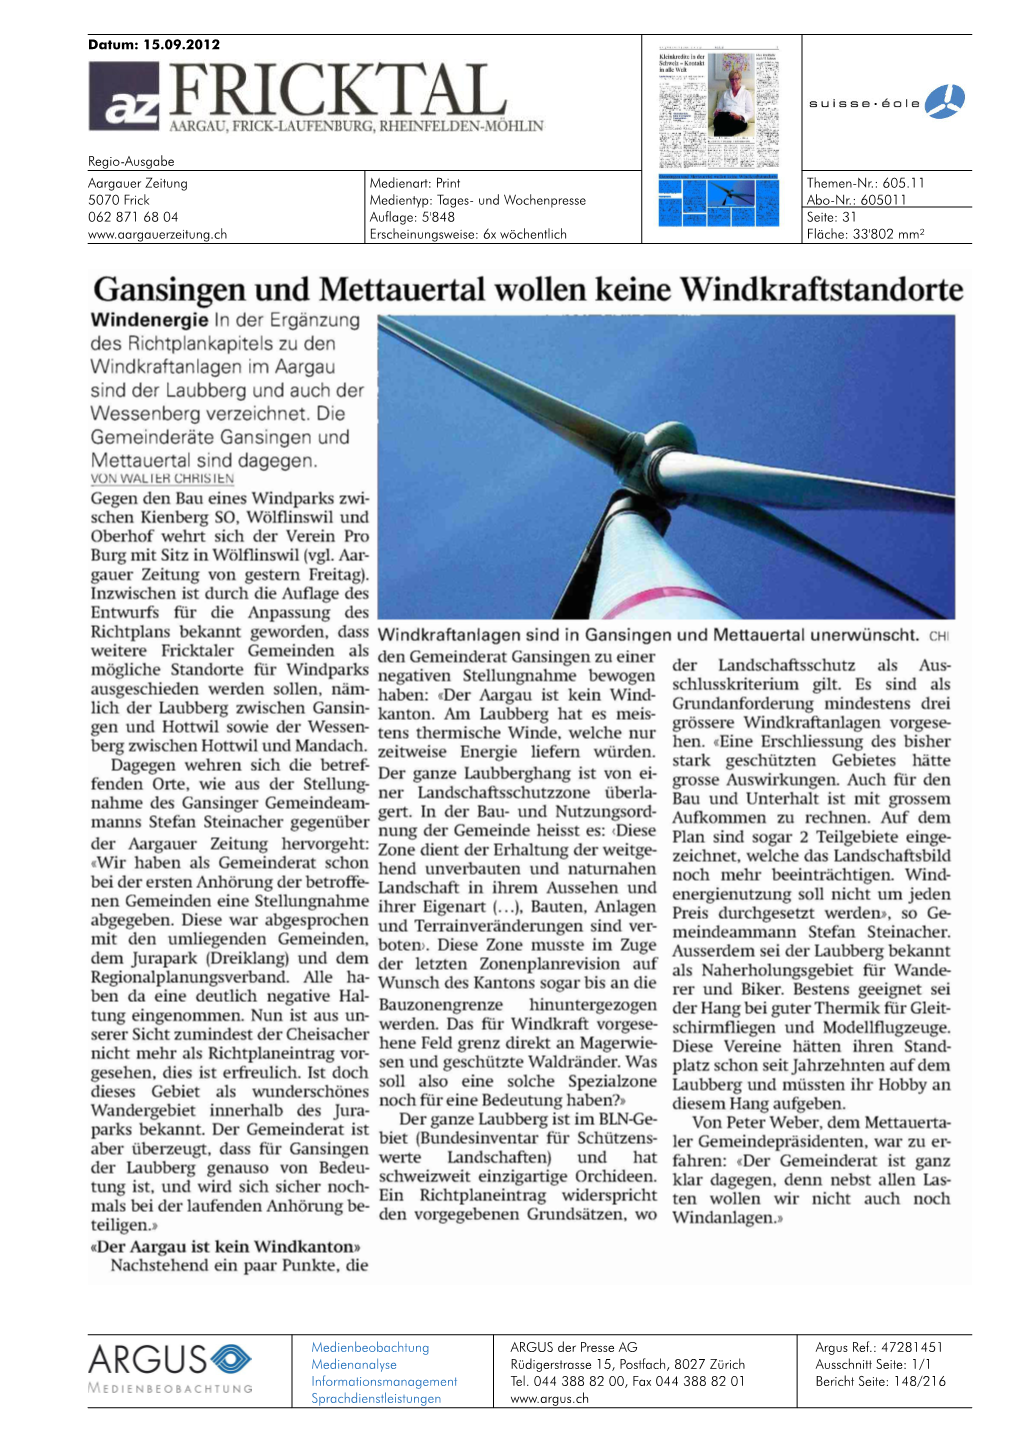 Gansingen Und Mettauertal Wollen Keine Windkraftstandorte